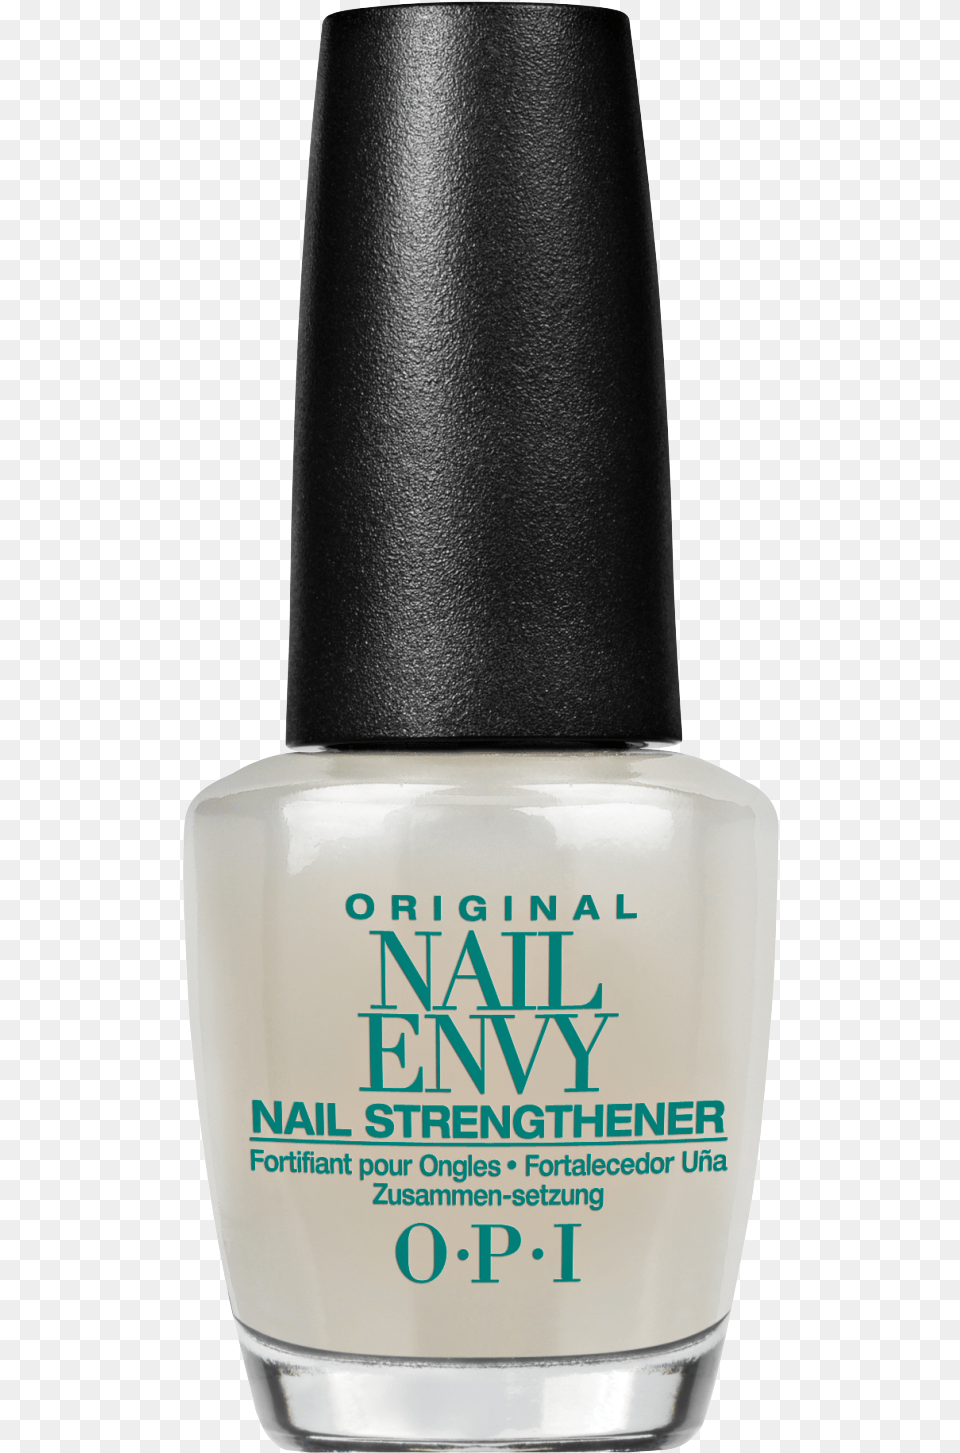 Opi Nail Envy Original Nail Strengthener, Cosmetics, Bottle, Perfume, Nail Polish Png Image